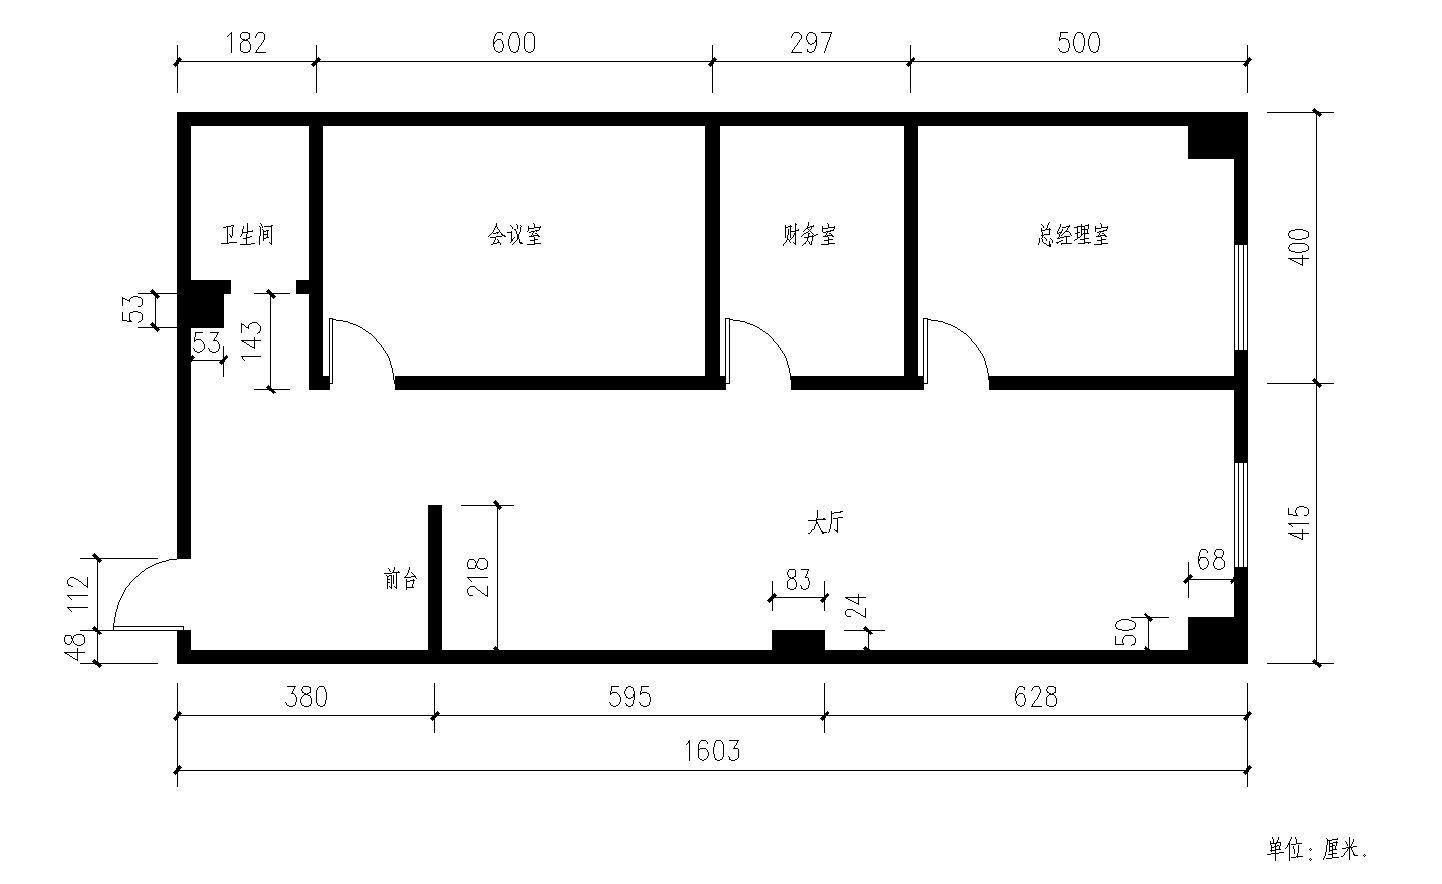 36平可以两室一厅吗-38平方一室一厅长方形-30平米装修成两室一厅-50